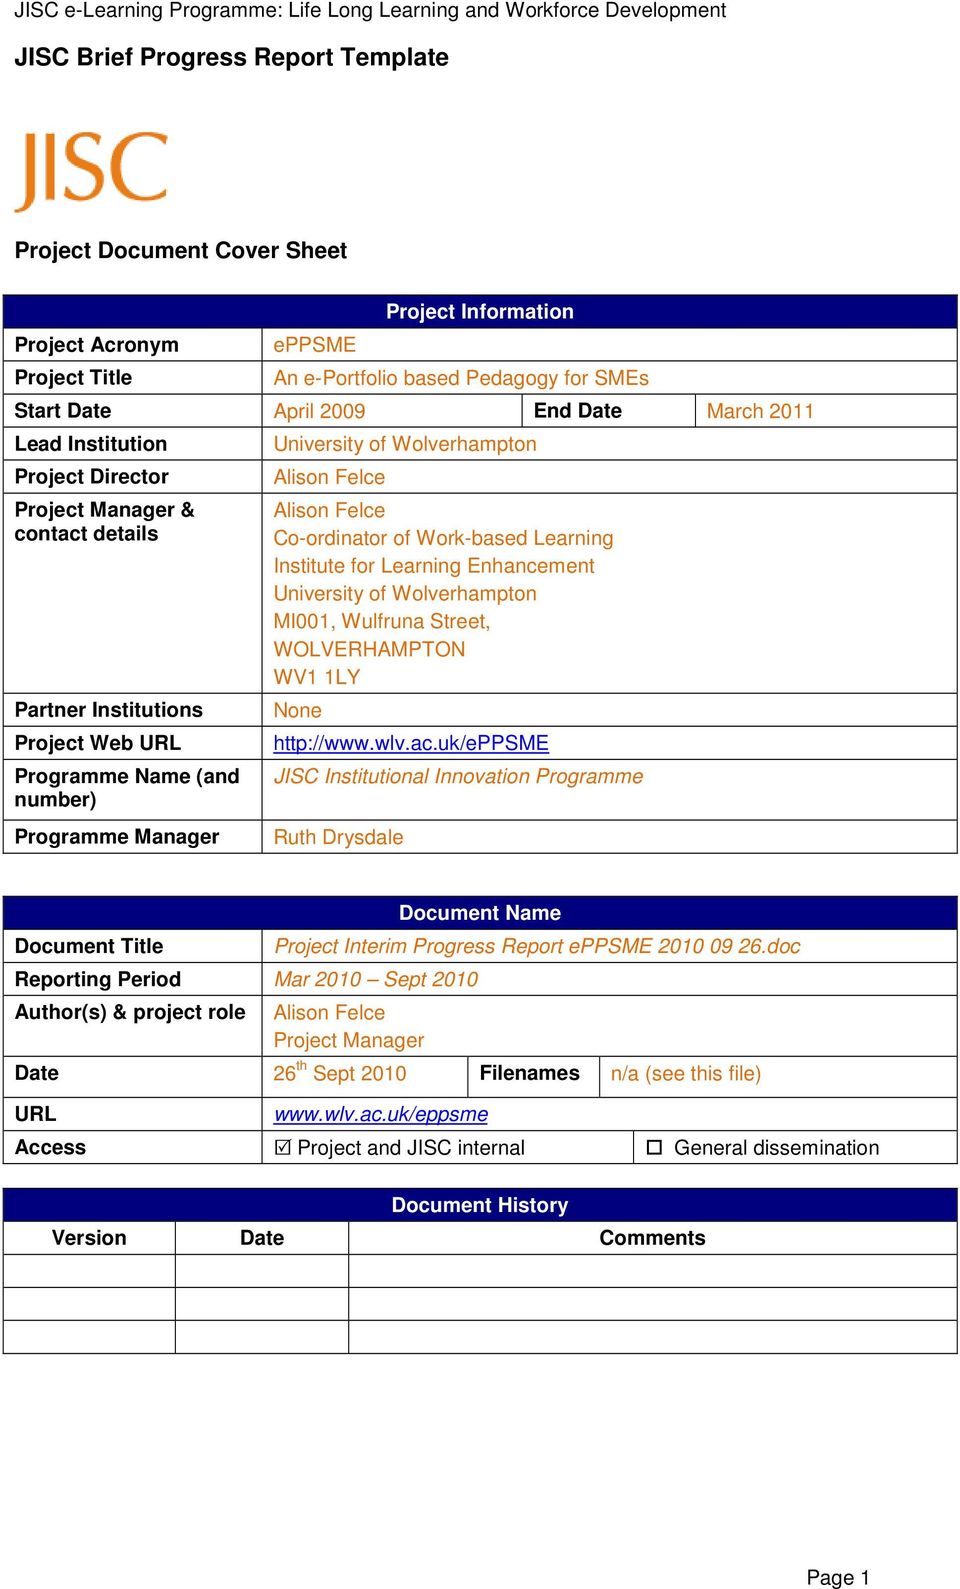 JISC Brief Progress Report Template - PDF Free Download In Progress Report Template Doc